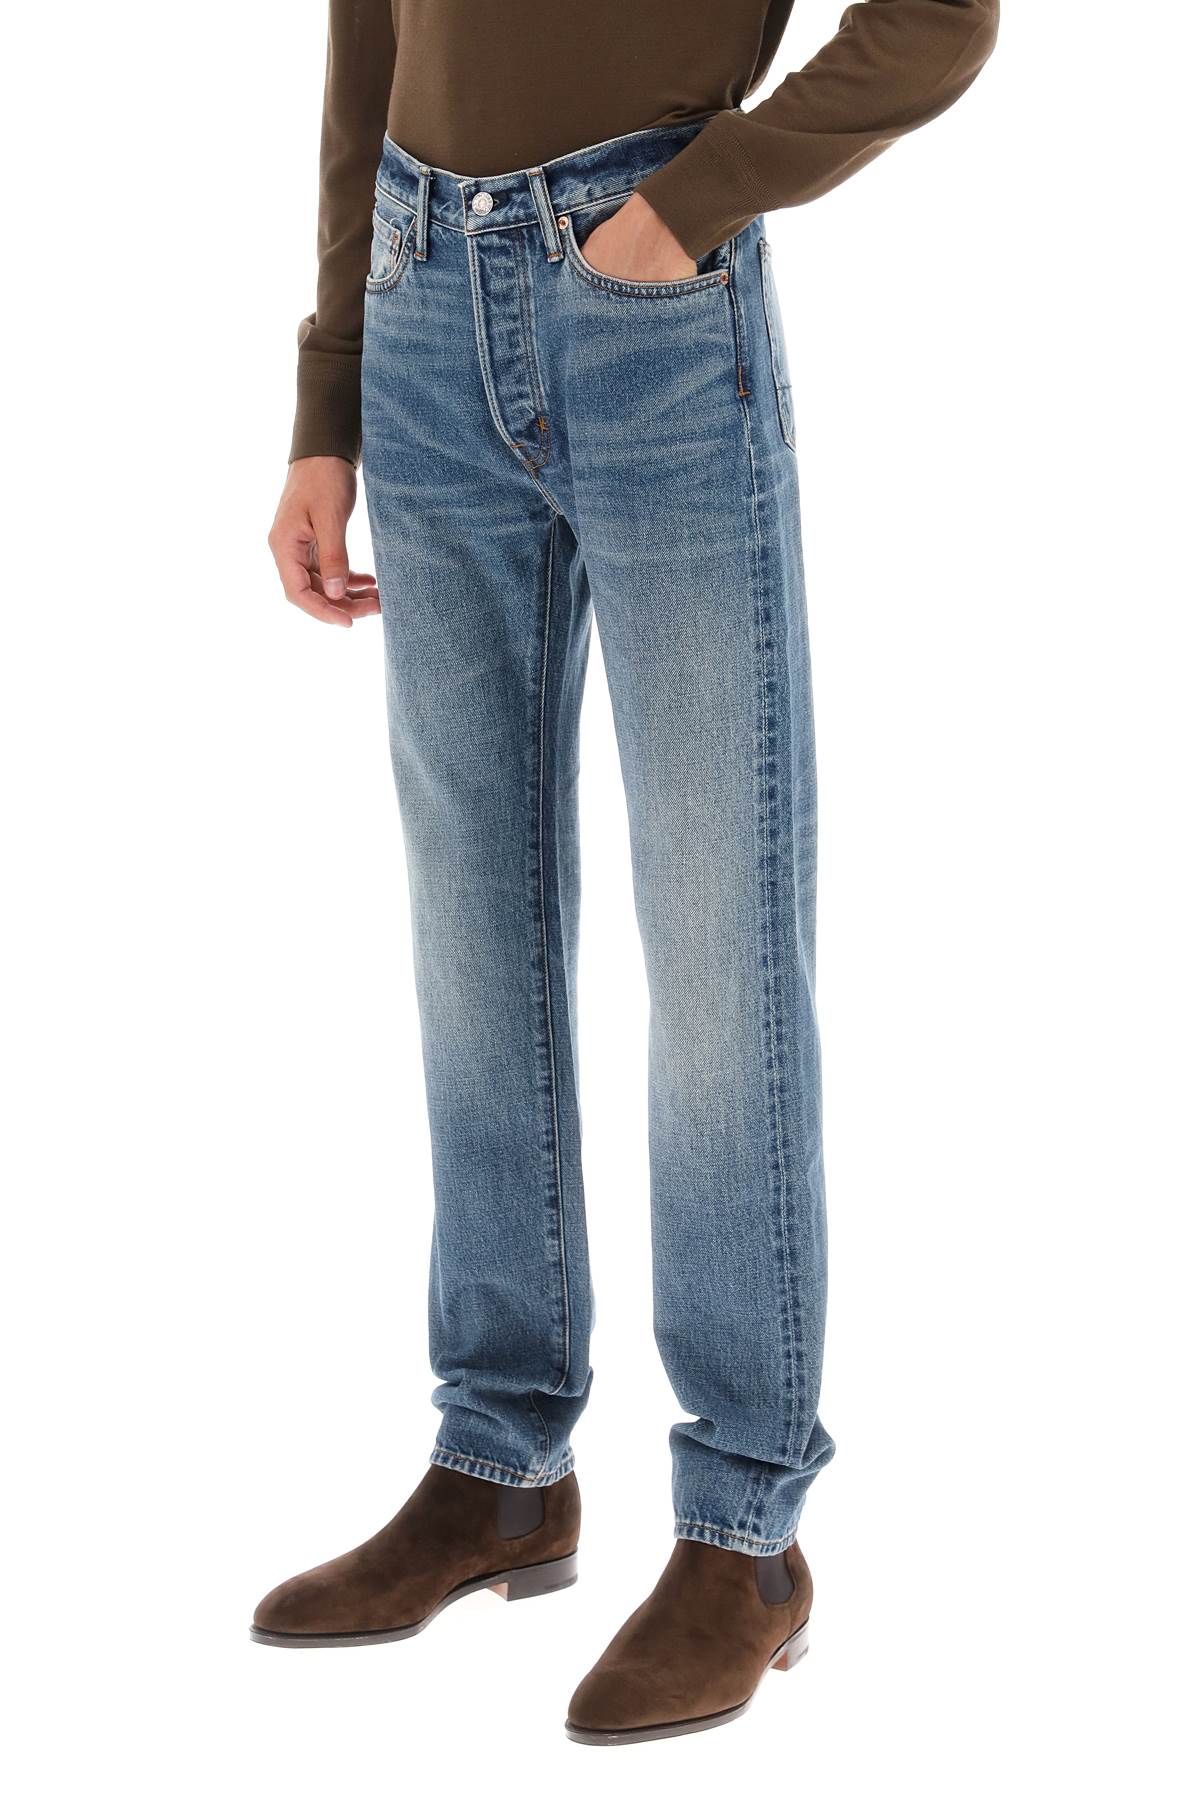 Tom ford regular fit jeans-3